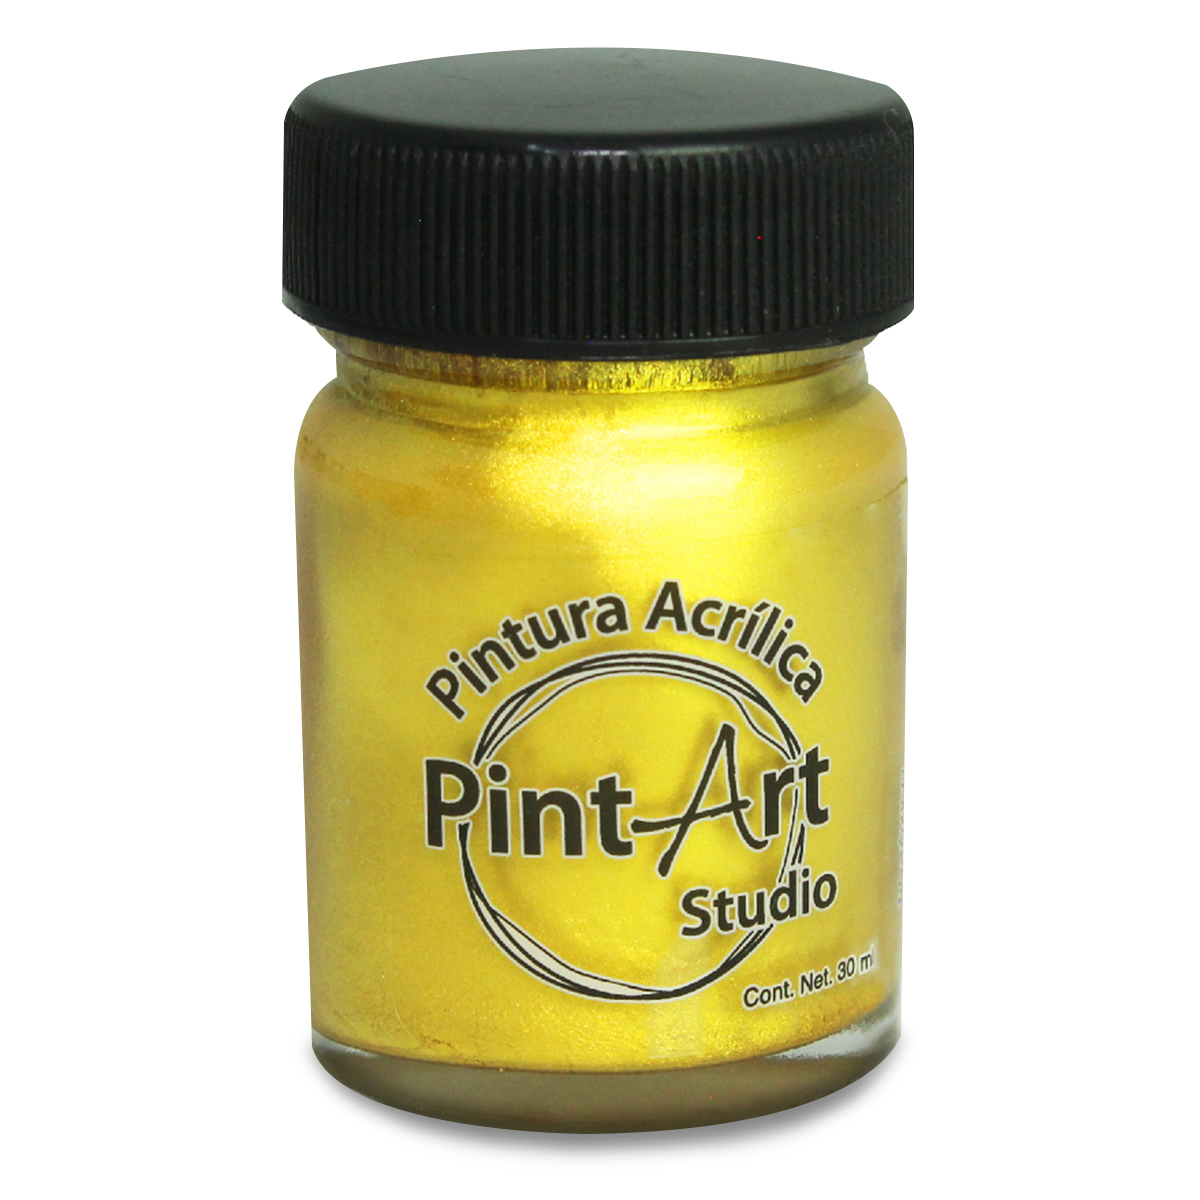 Pintura Acrílica PintArt Studio  Dorado 1 pieza 30 ml | Office Depot  Mexico